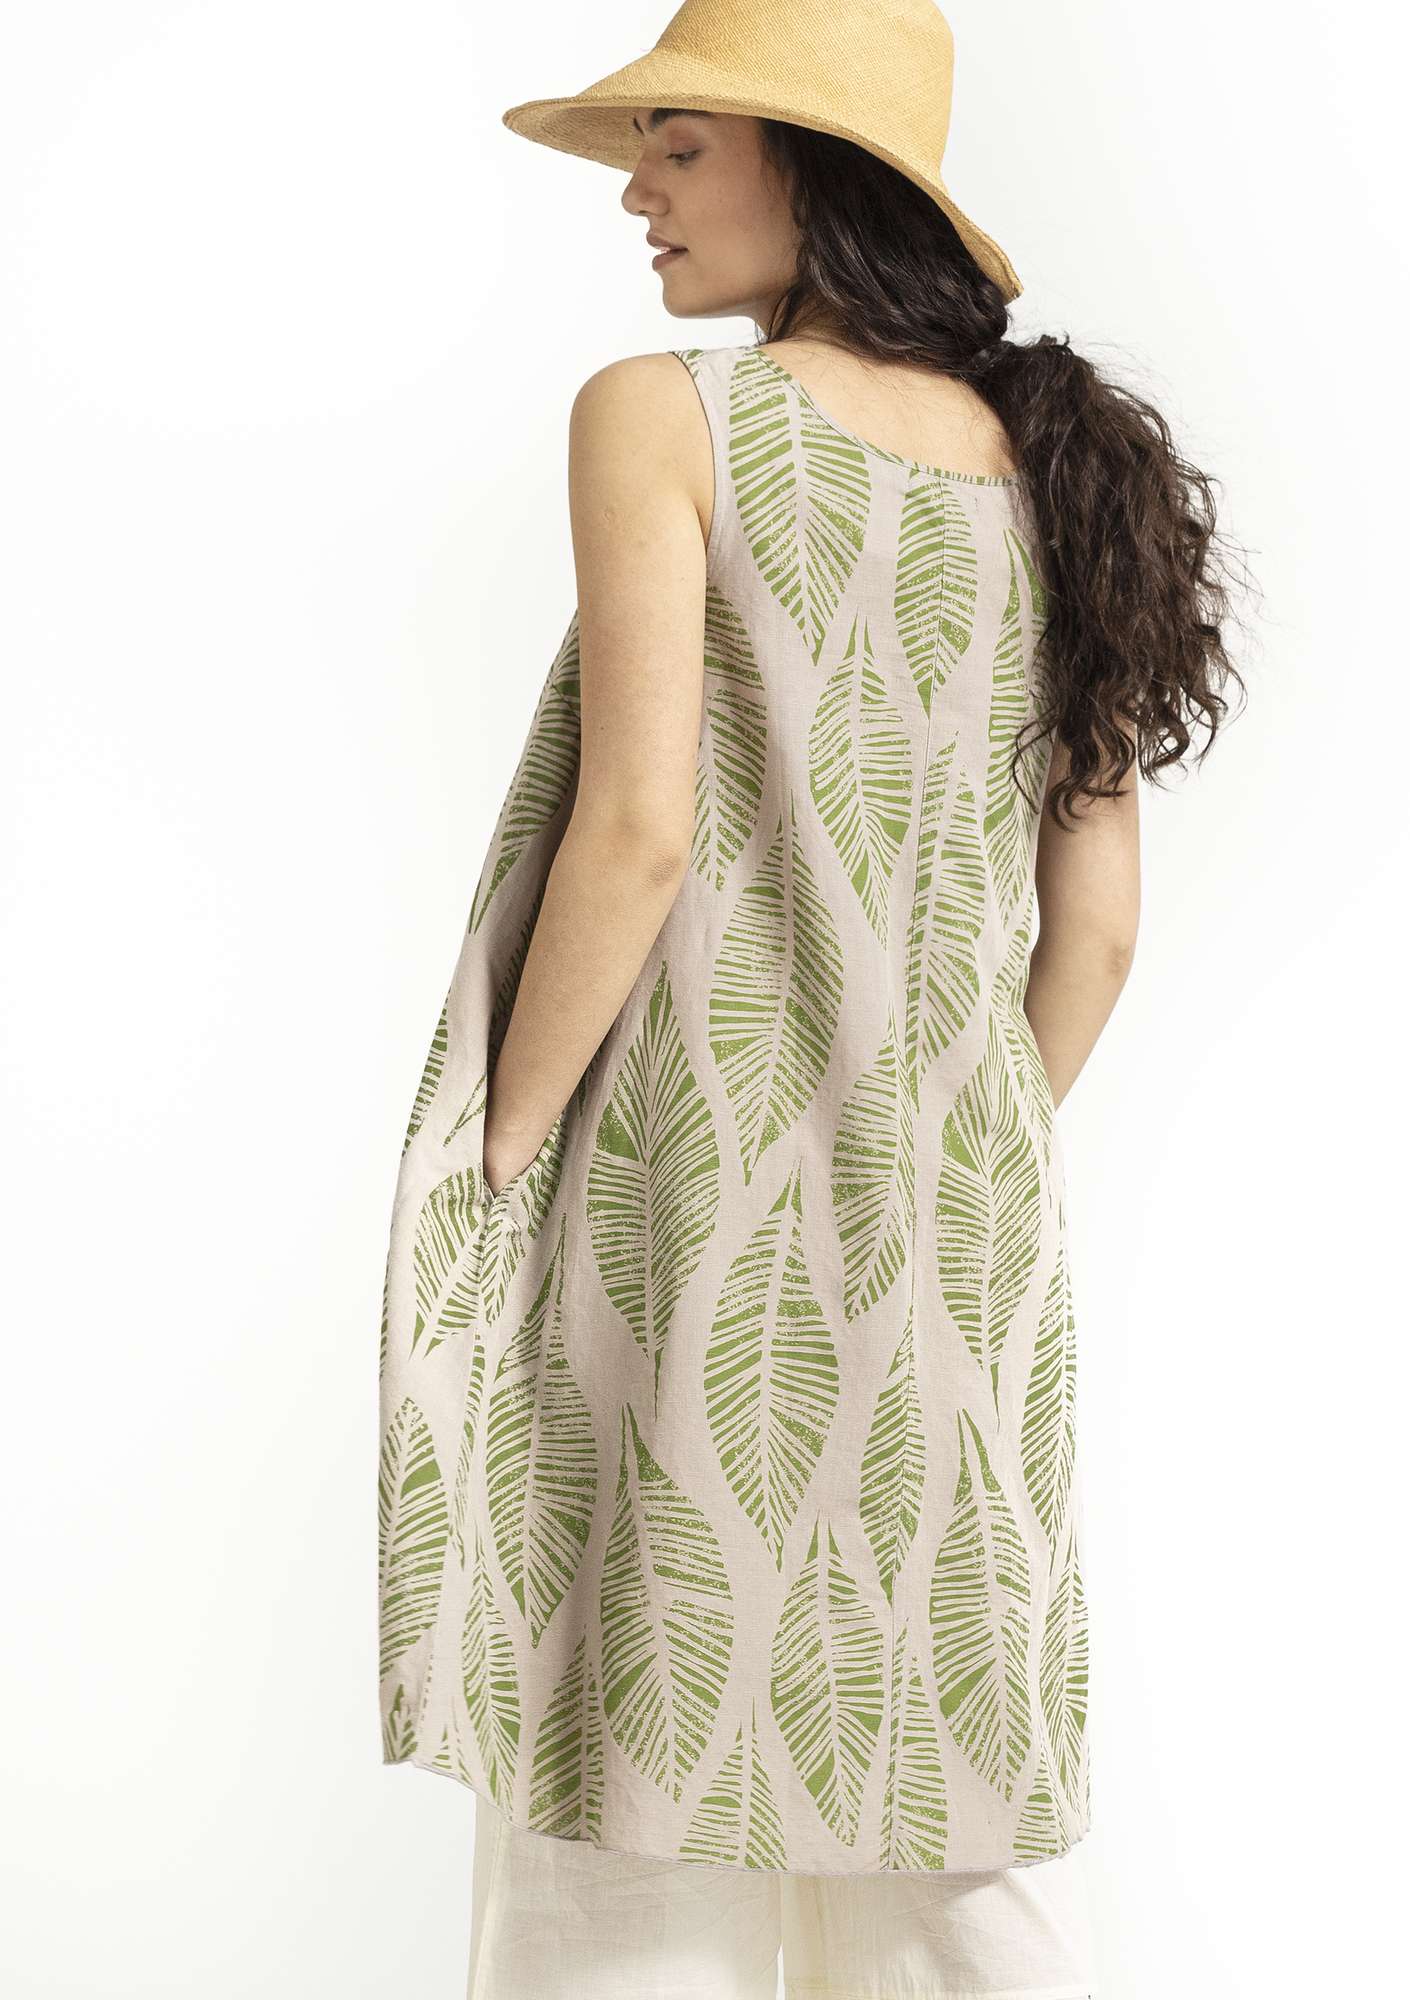 Vevd kjole «Decor» i økologisk bomull/lin naturmelert thumbnail